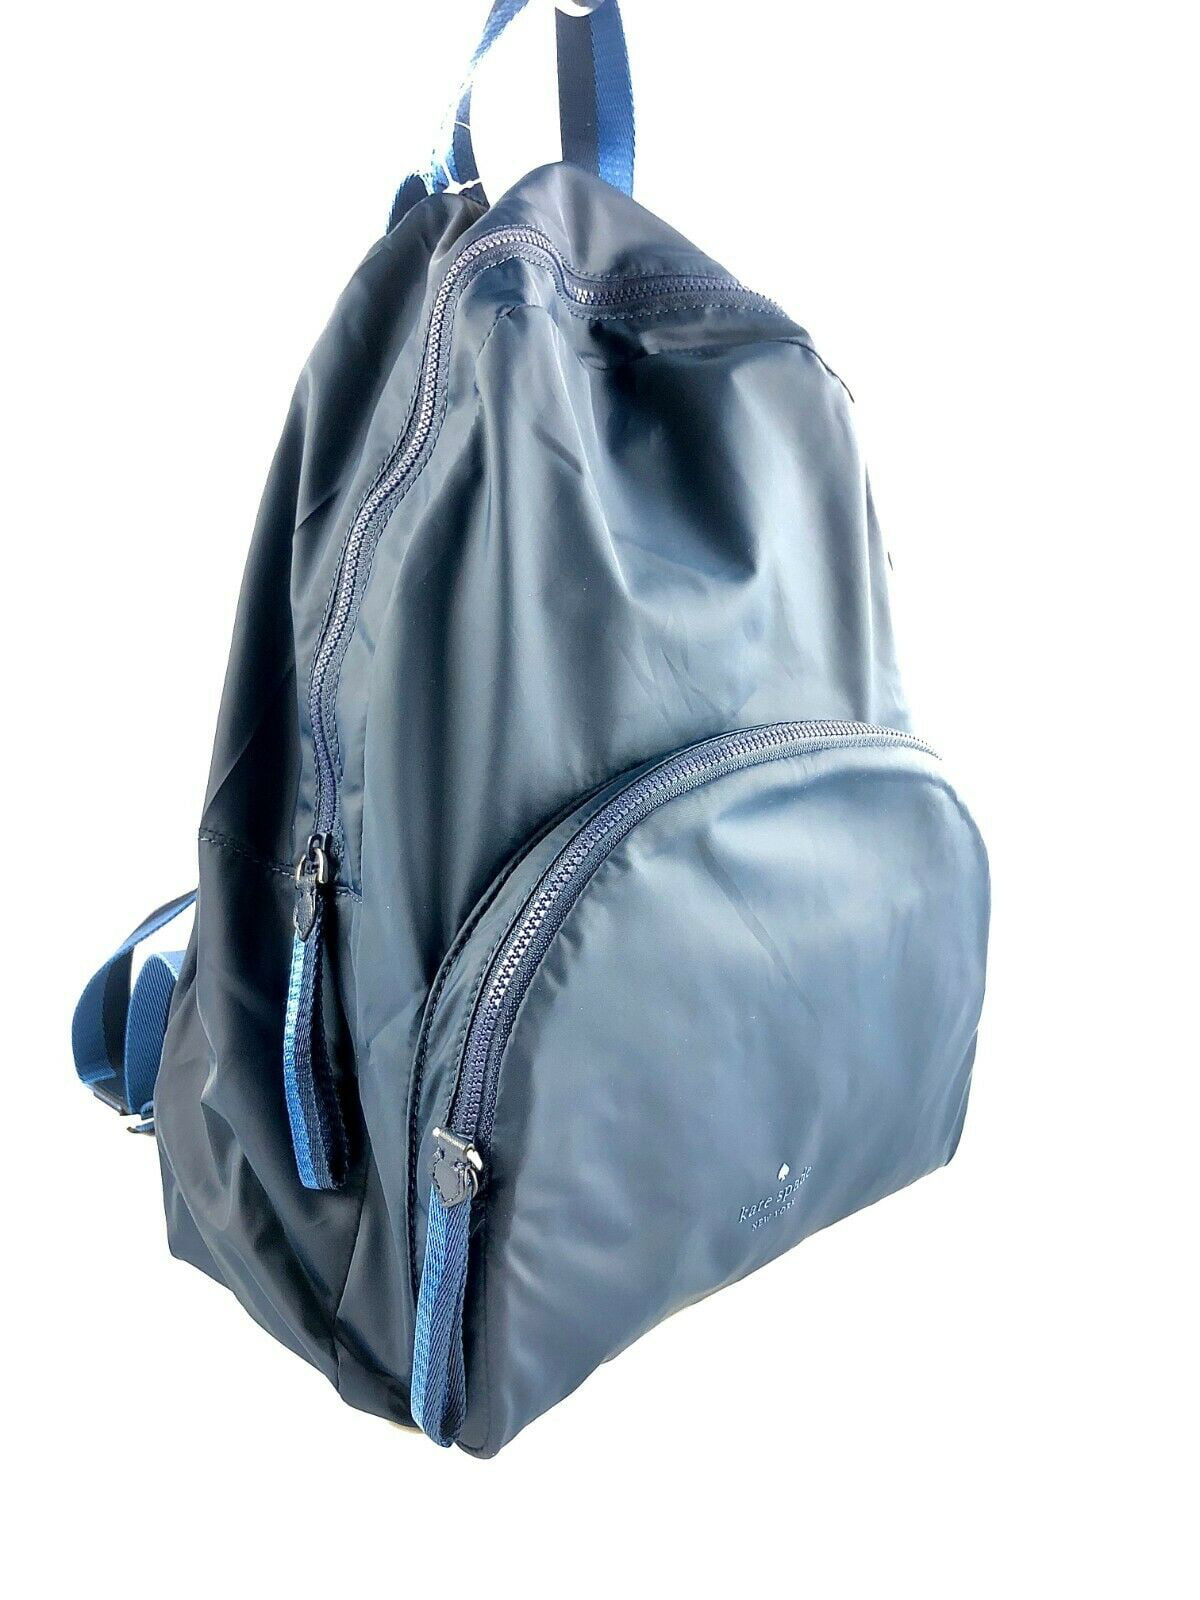 Kate Spade Arya Nylon Packable Backpack Bag (Nightcap) 